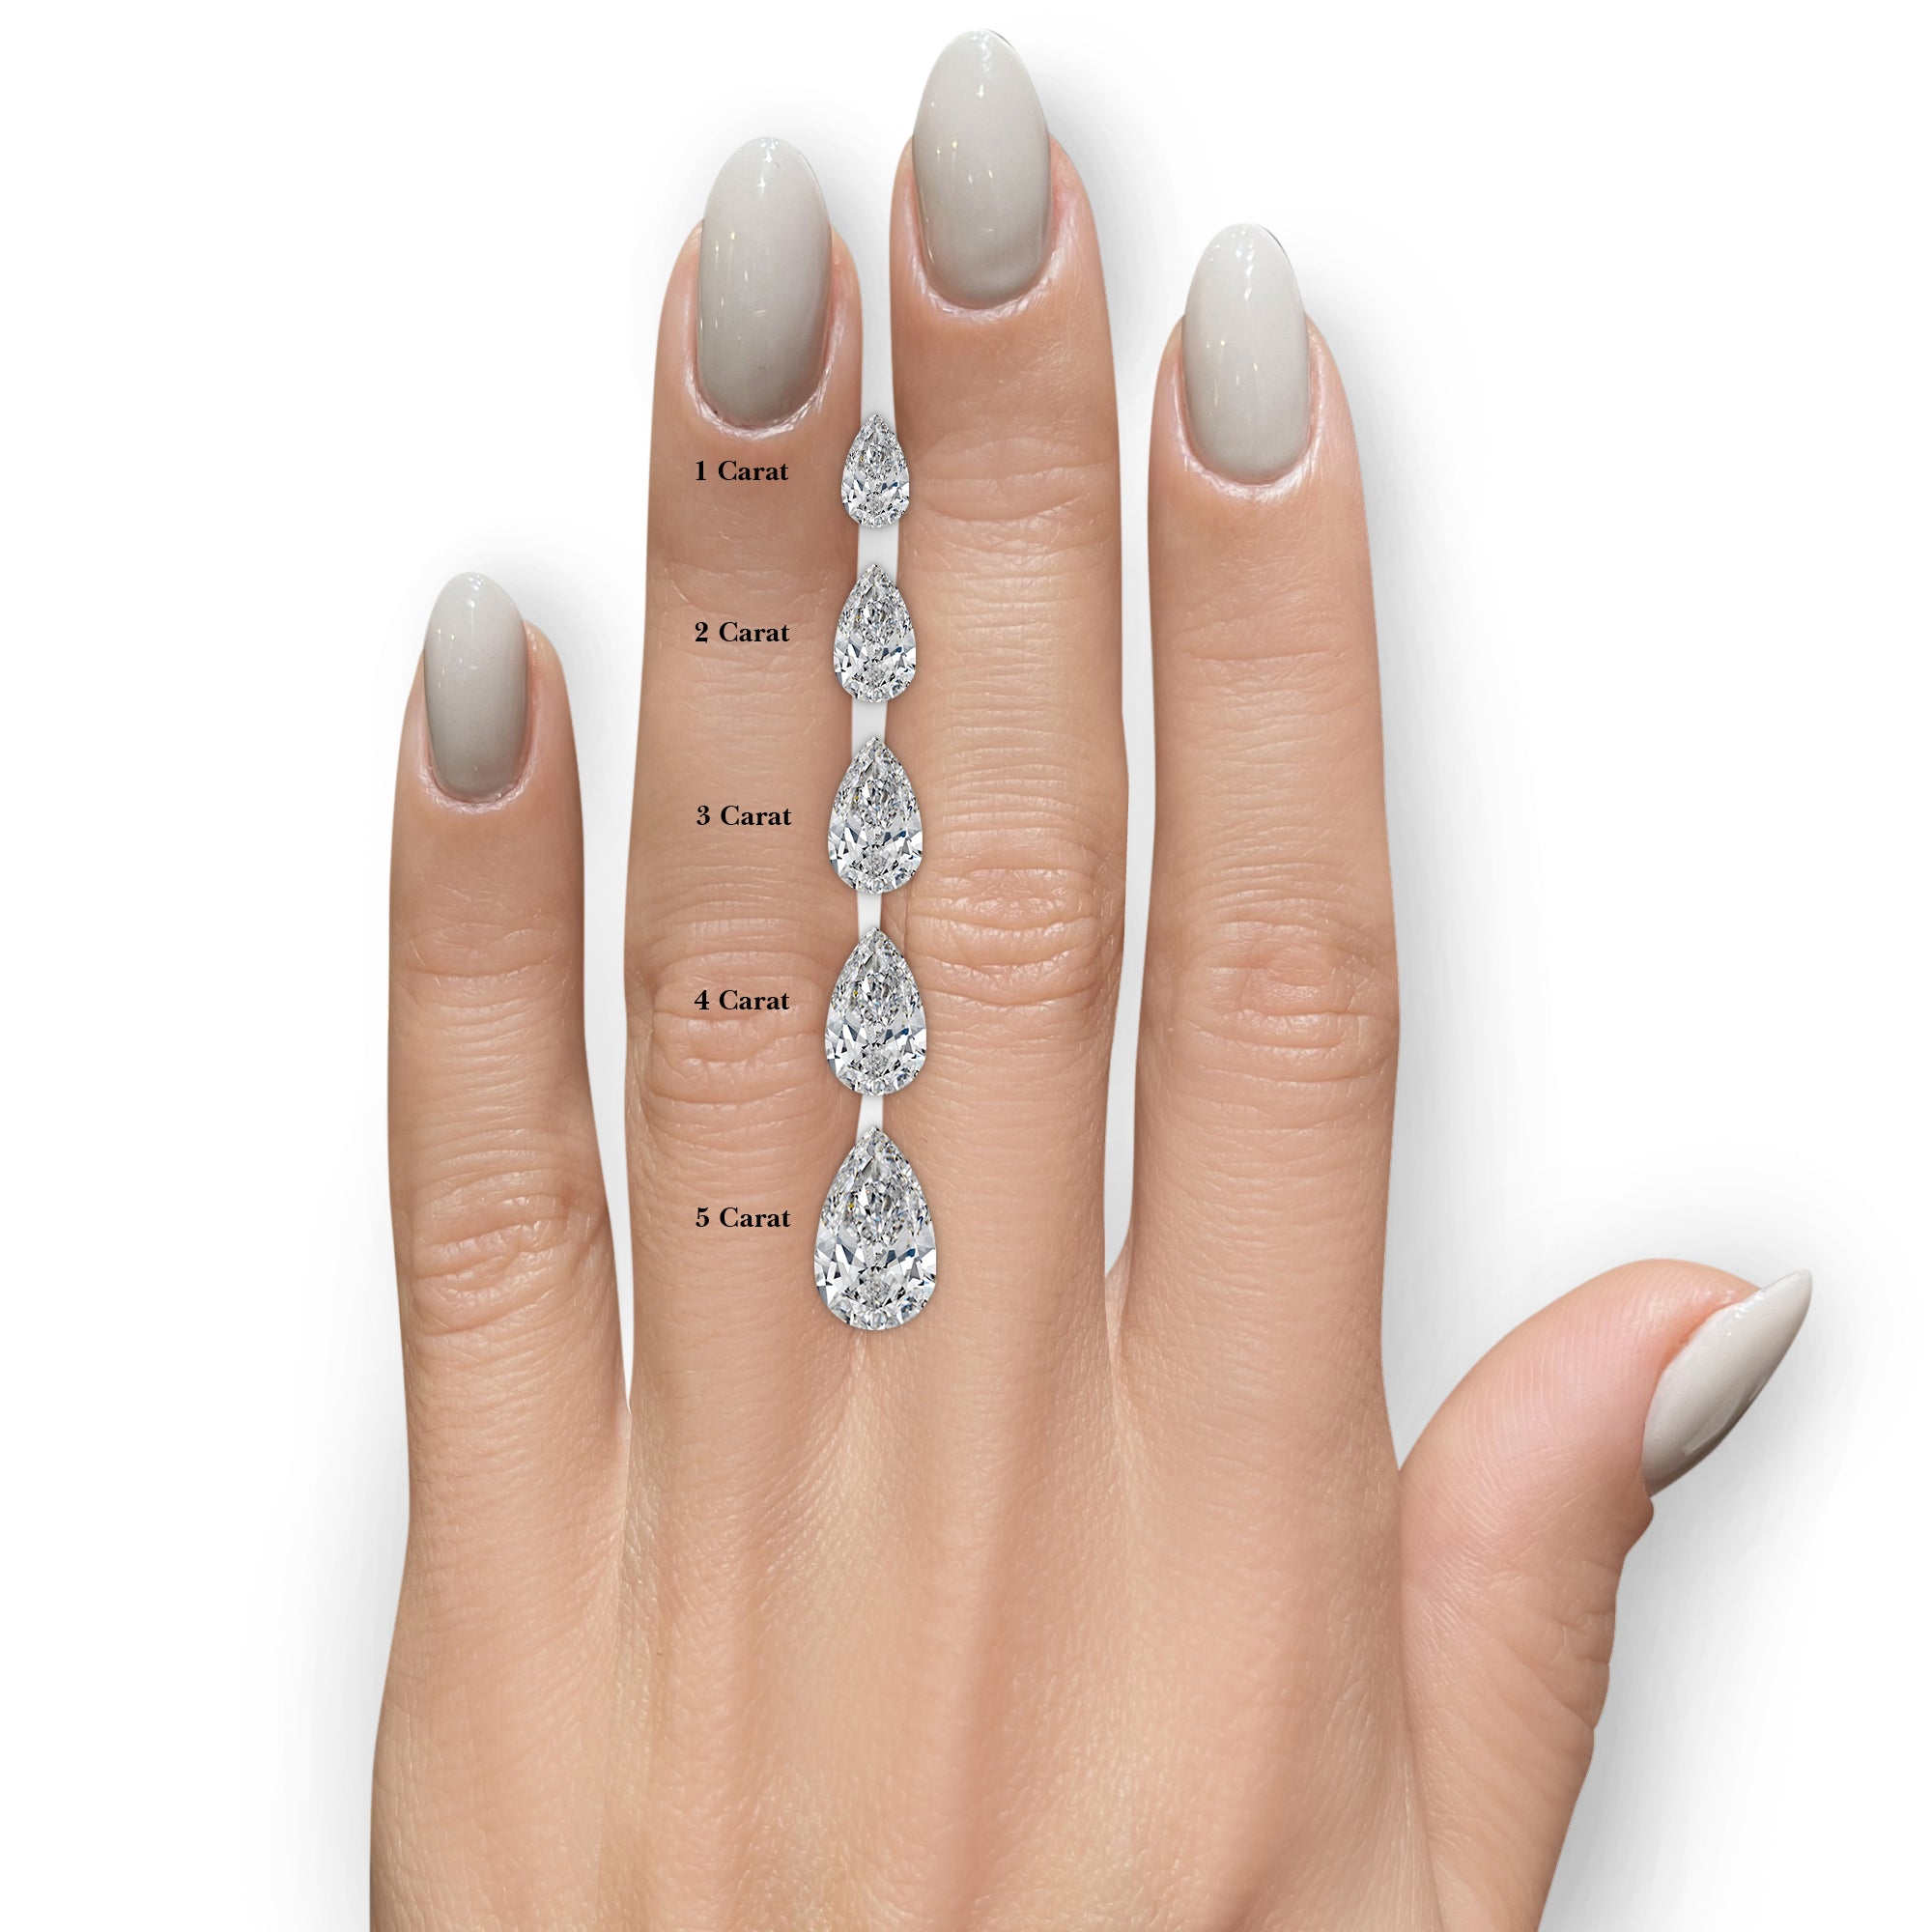 Sophia Moissanite & Diamonds Ring -14K Rose Gold